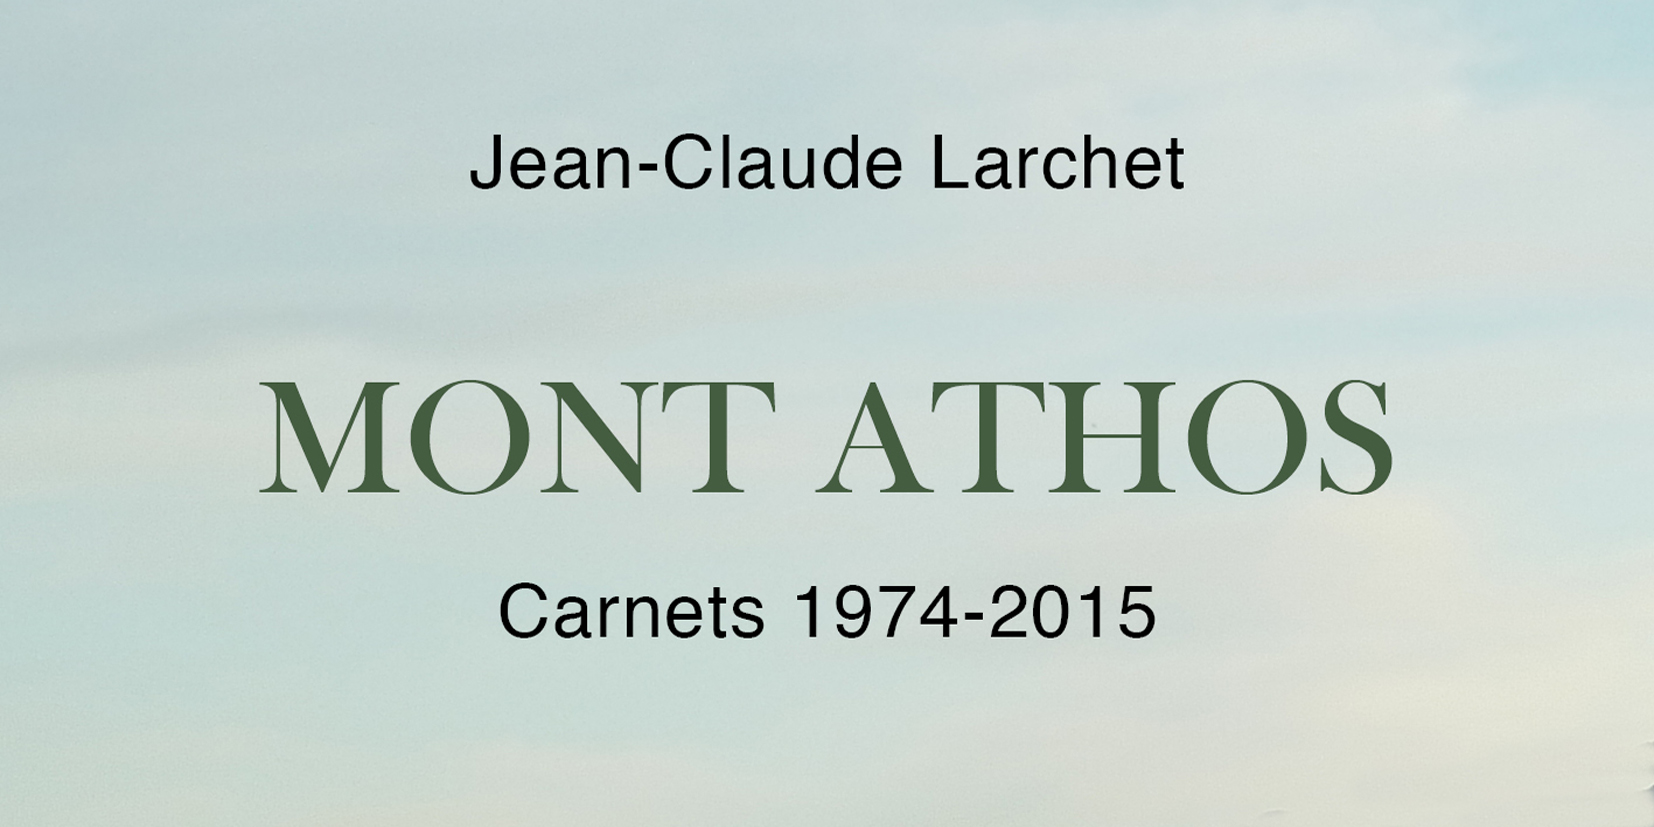 Vient de paraître : jean-claude larchet, «mont athos. carnets 1974-2015»